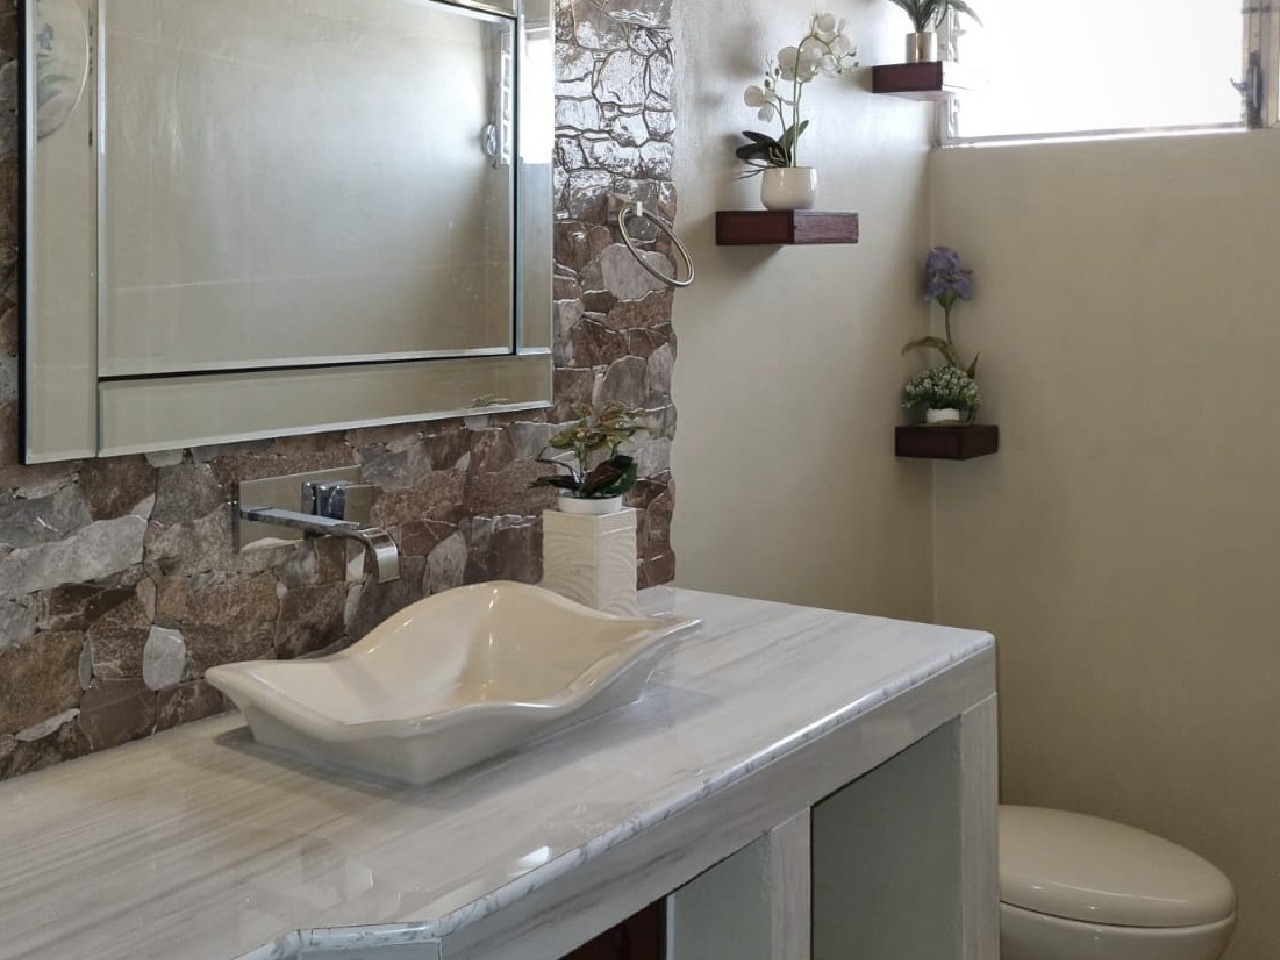 Baño moderno que cuenta con pared enchapada que lo acompaña un espejo elegante, lavamanos de ceramica y plantas para armonizar el espacio.